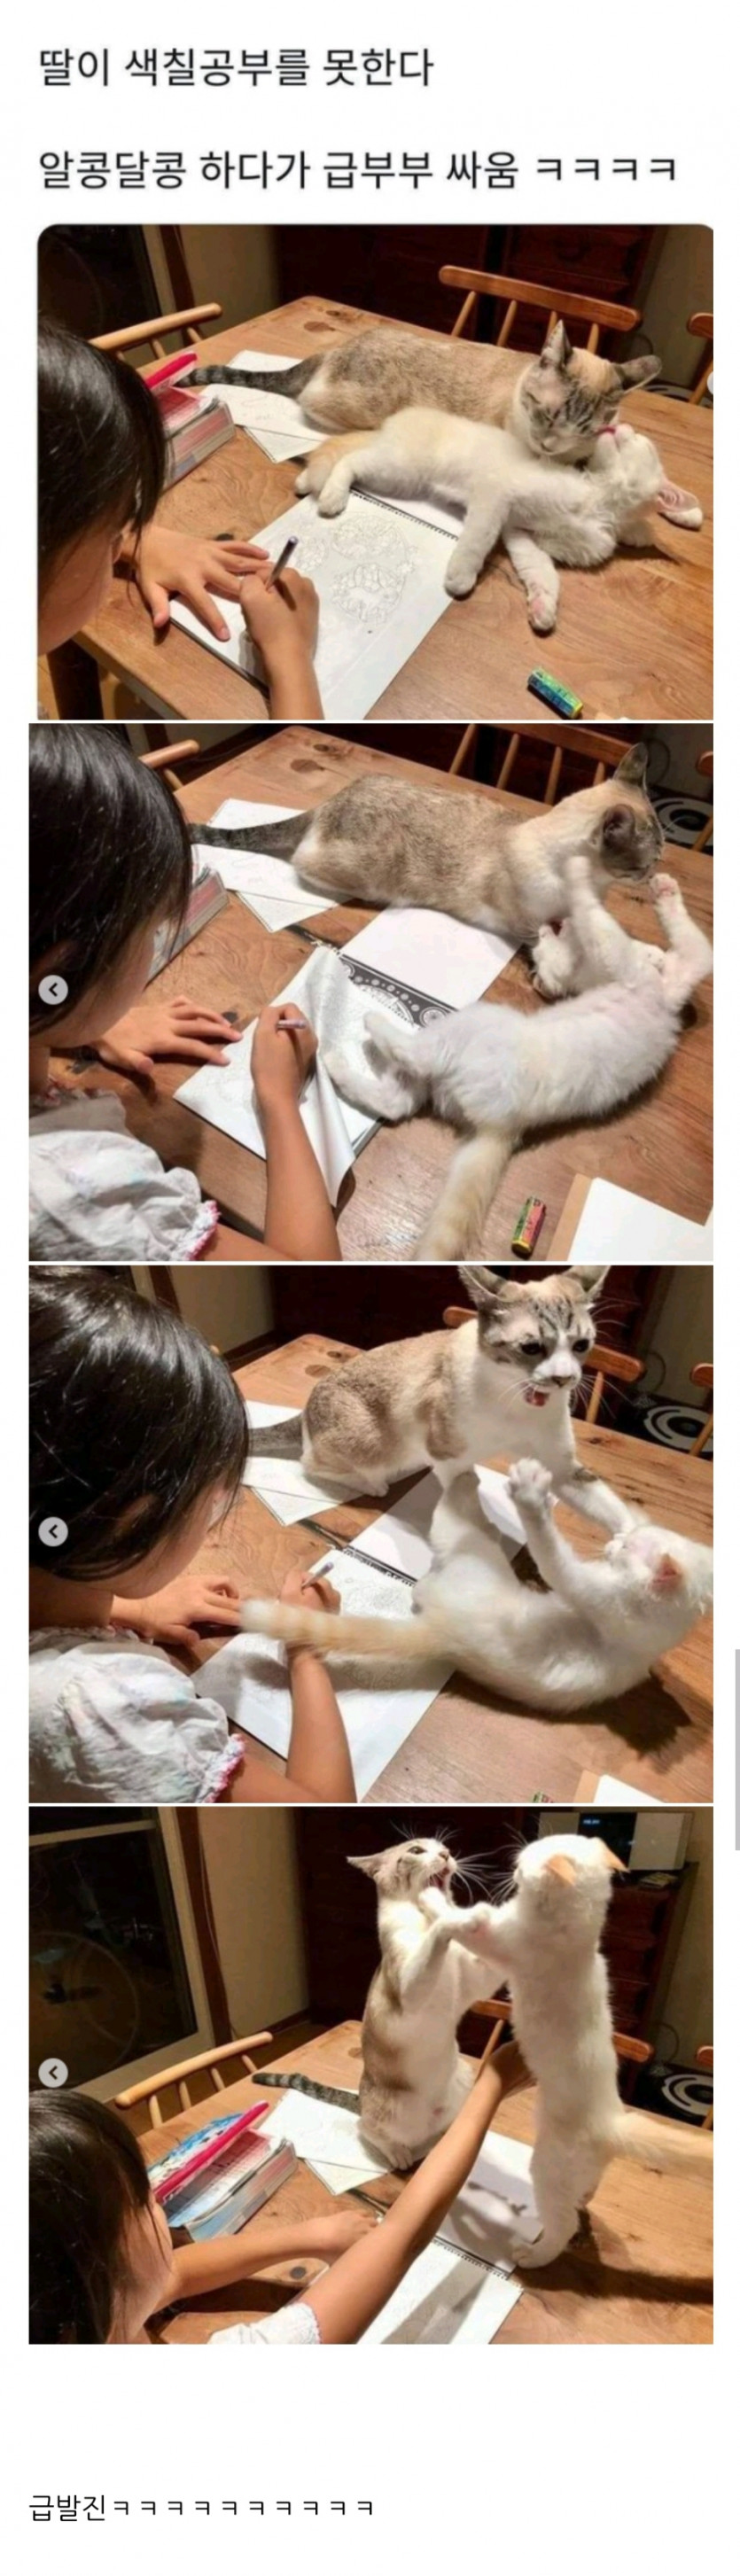 고양이 때문에 색칠공부 못하겠다